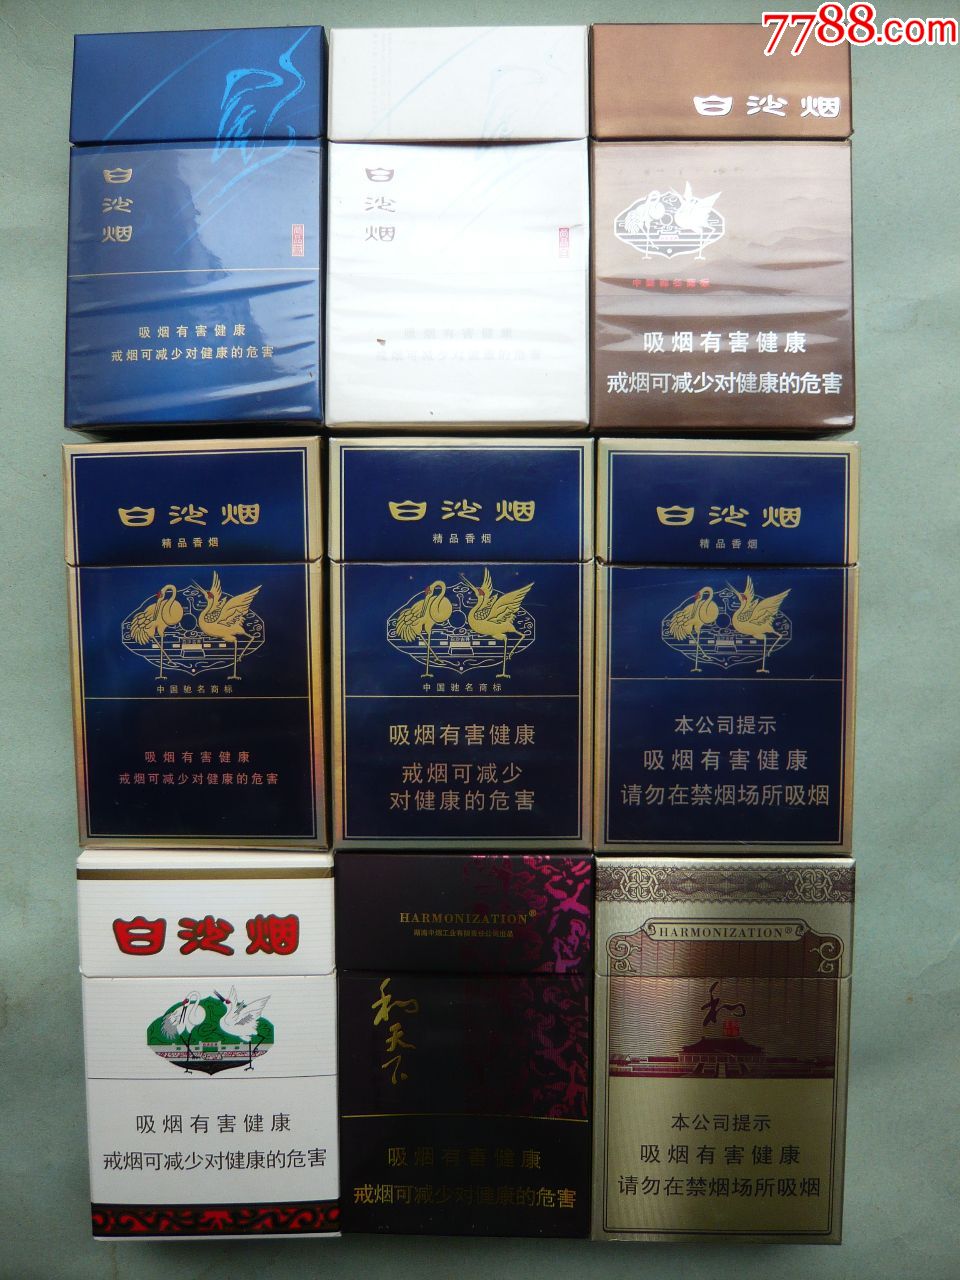 "白沙烟"烟标9种不同:尚品蓝(内含一支烟),尚品白,12版,精品三种,和